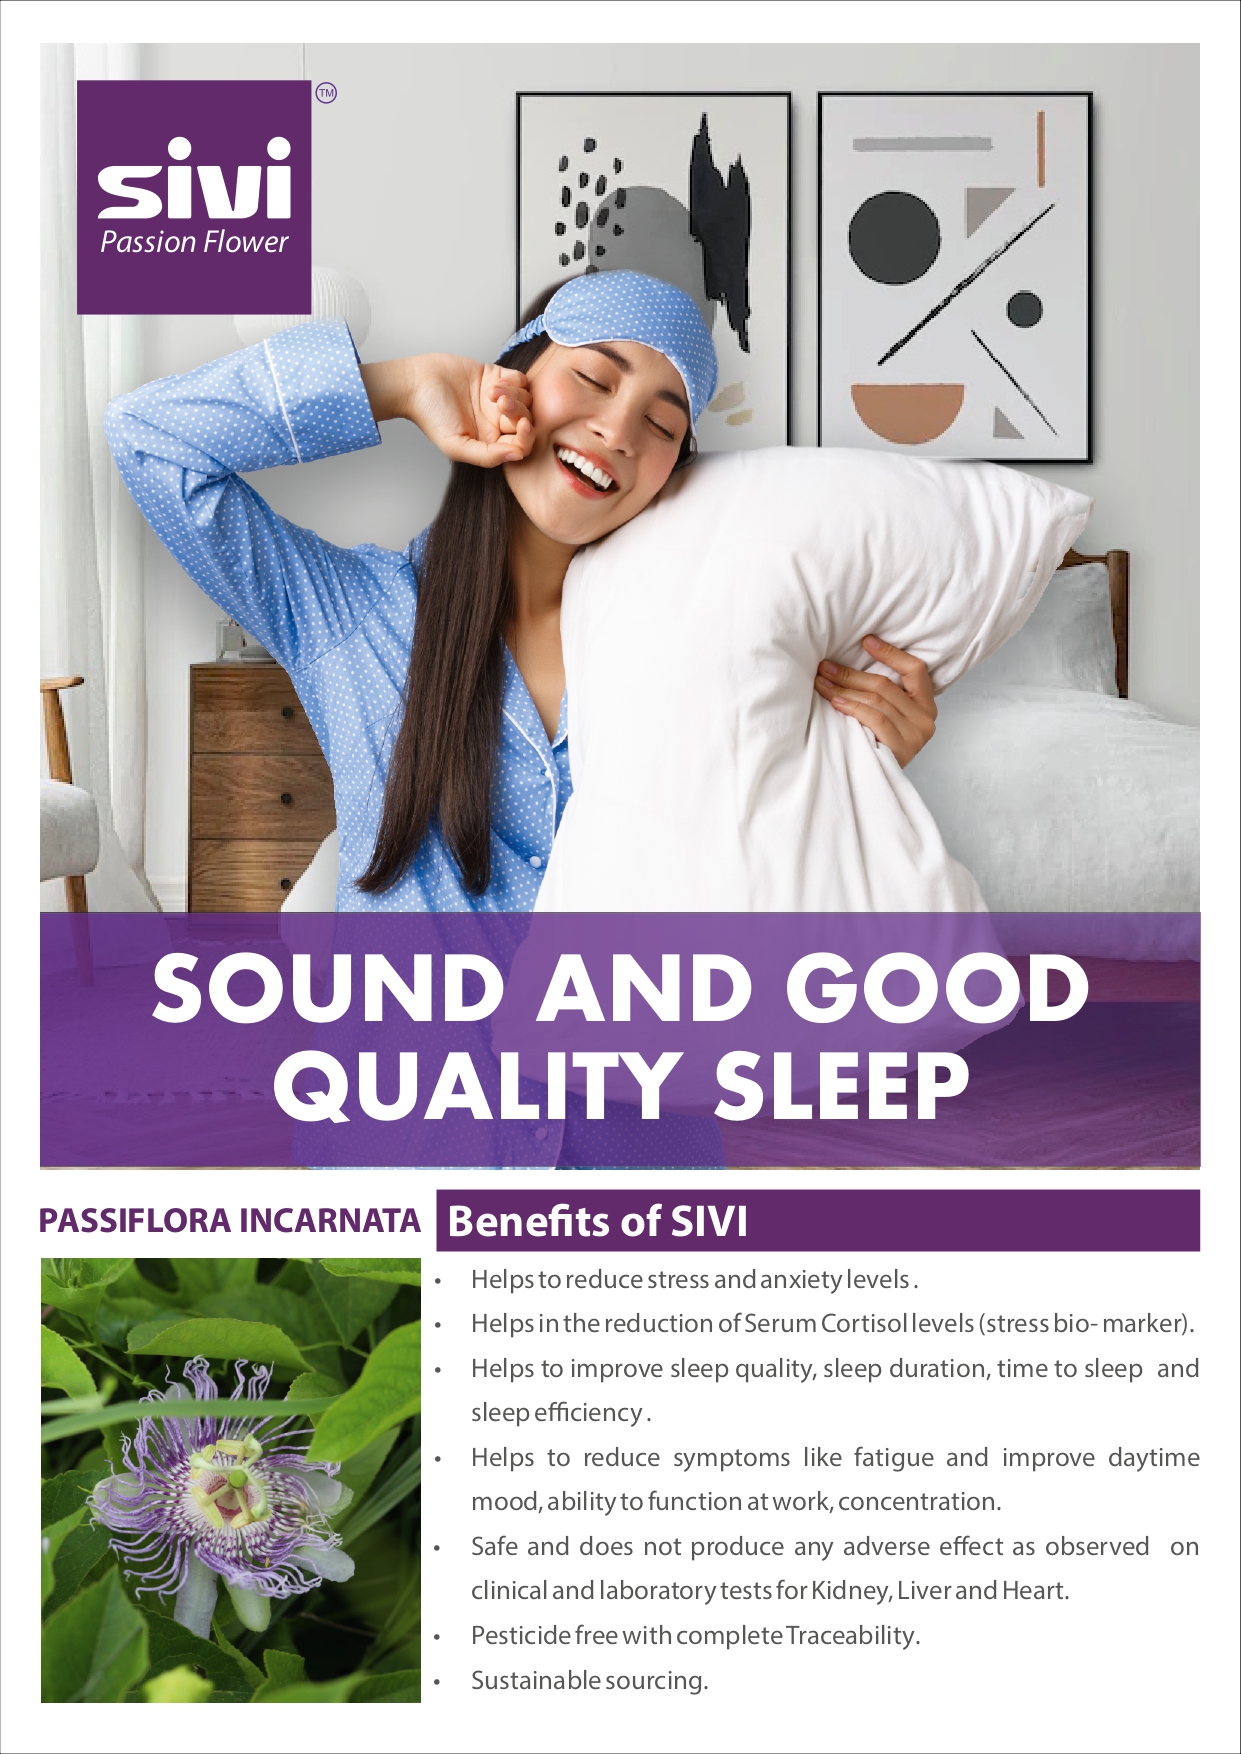 SIVI- For quality sleep